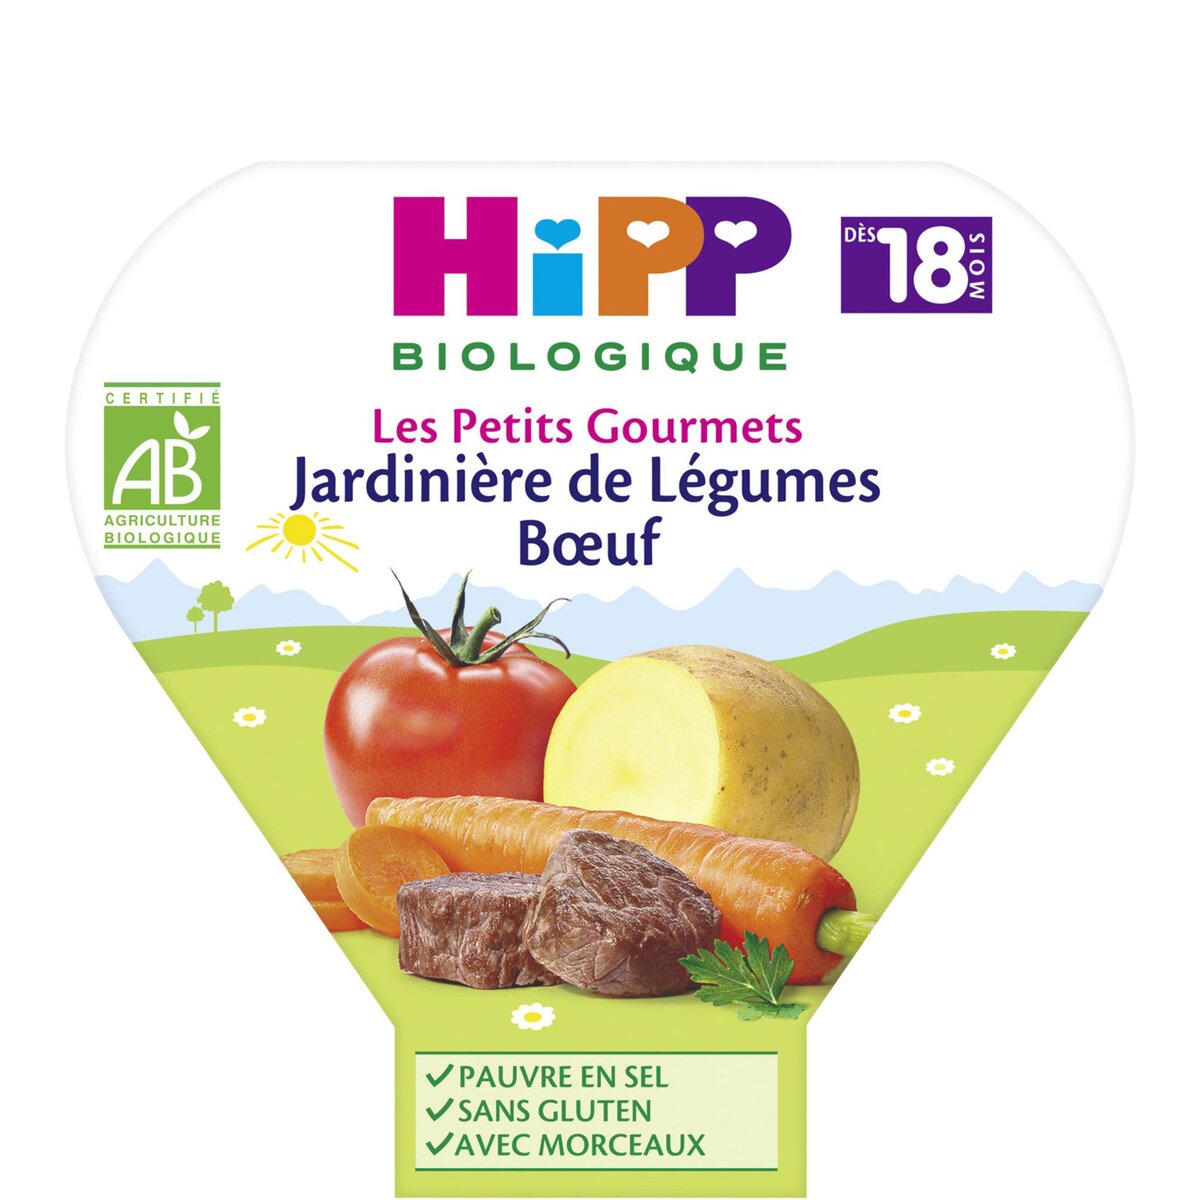 HIPP Assiette jardinière de légumes boeuf bio dès 18 mois 260g